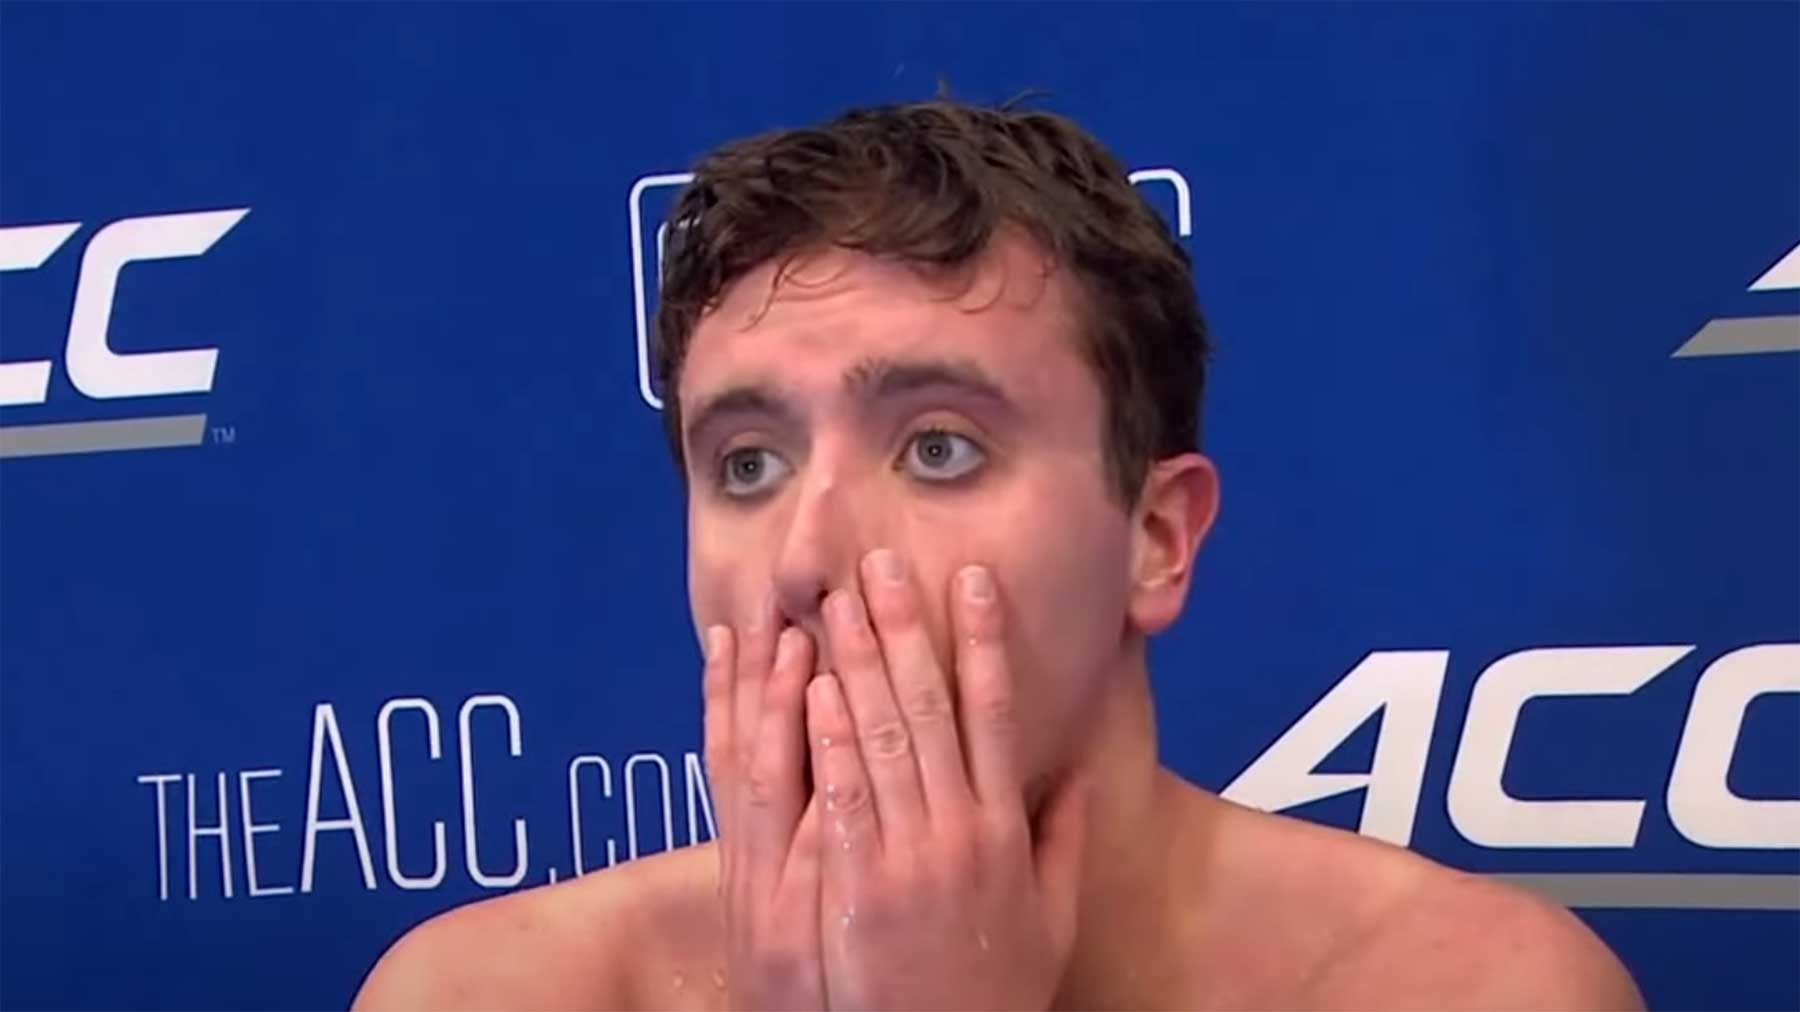 Schwimmer gewinnt & wird wegen seines Jubels disqualifiziert